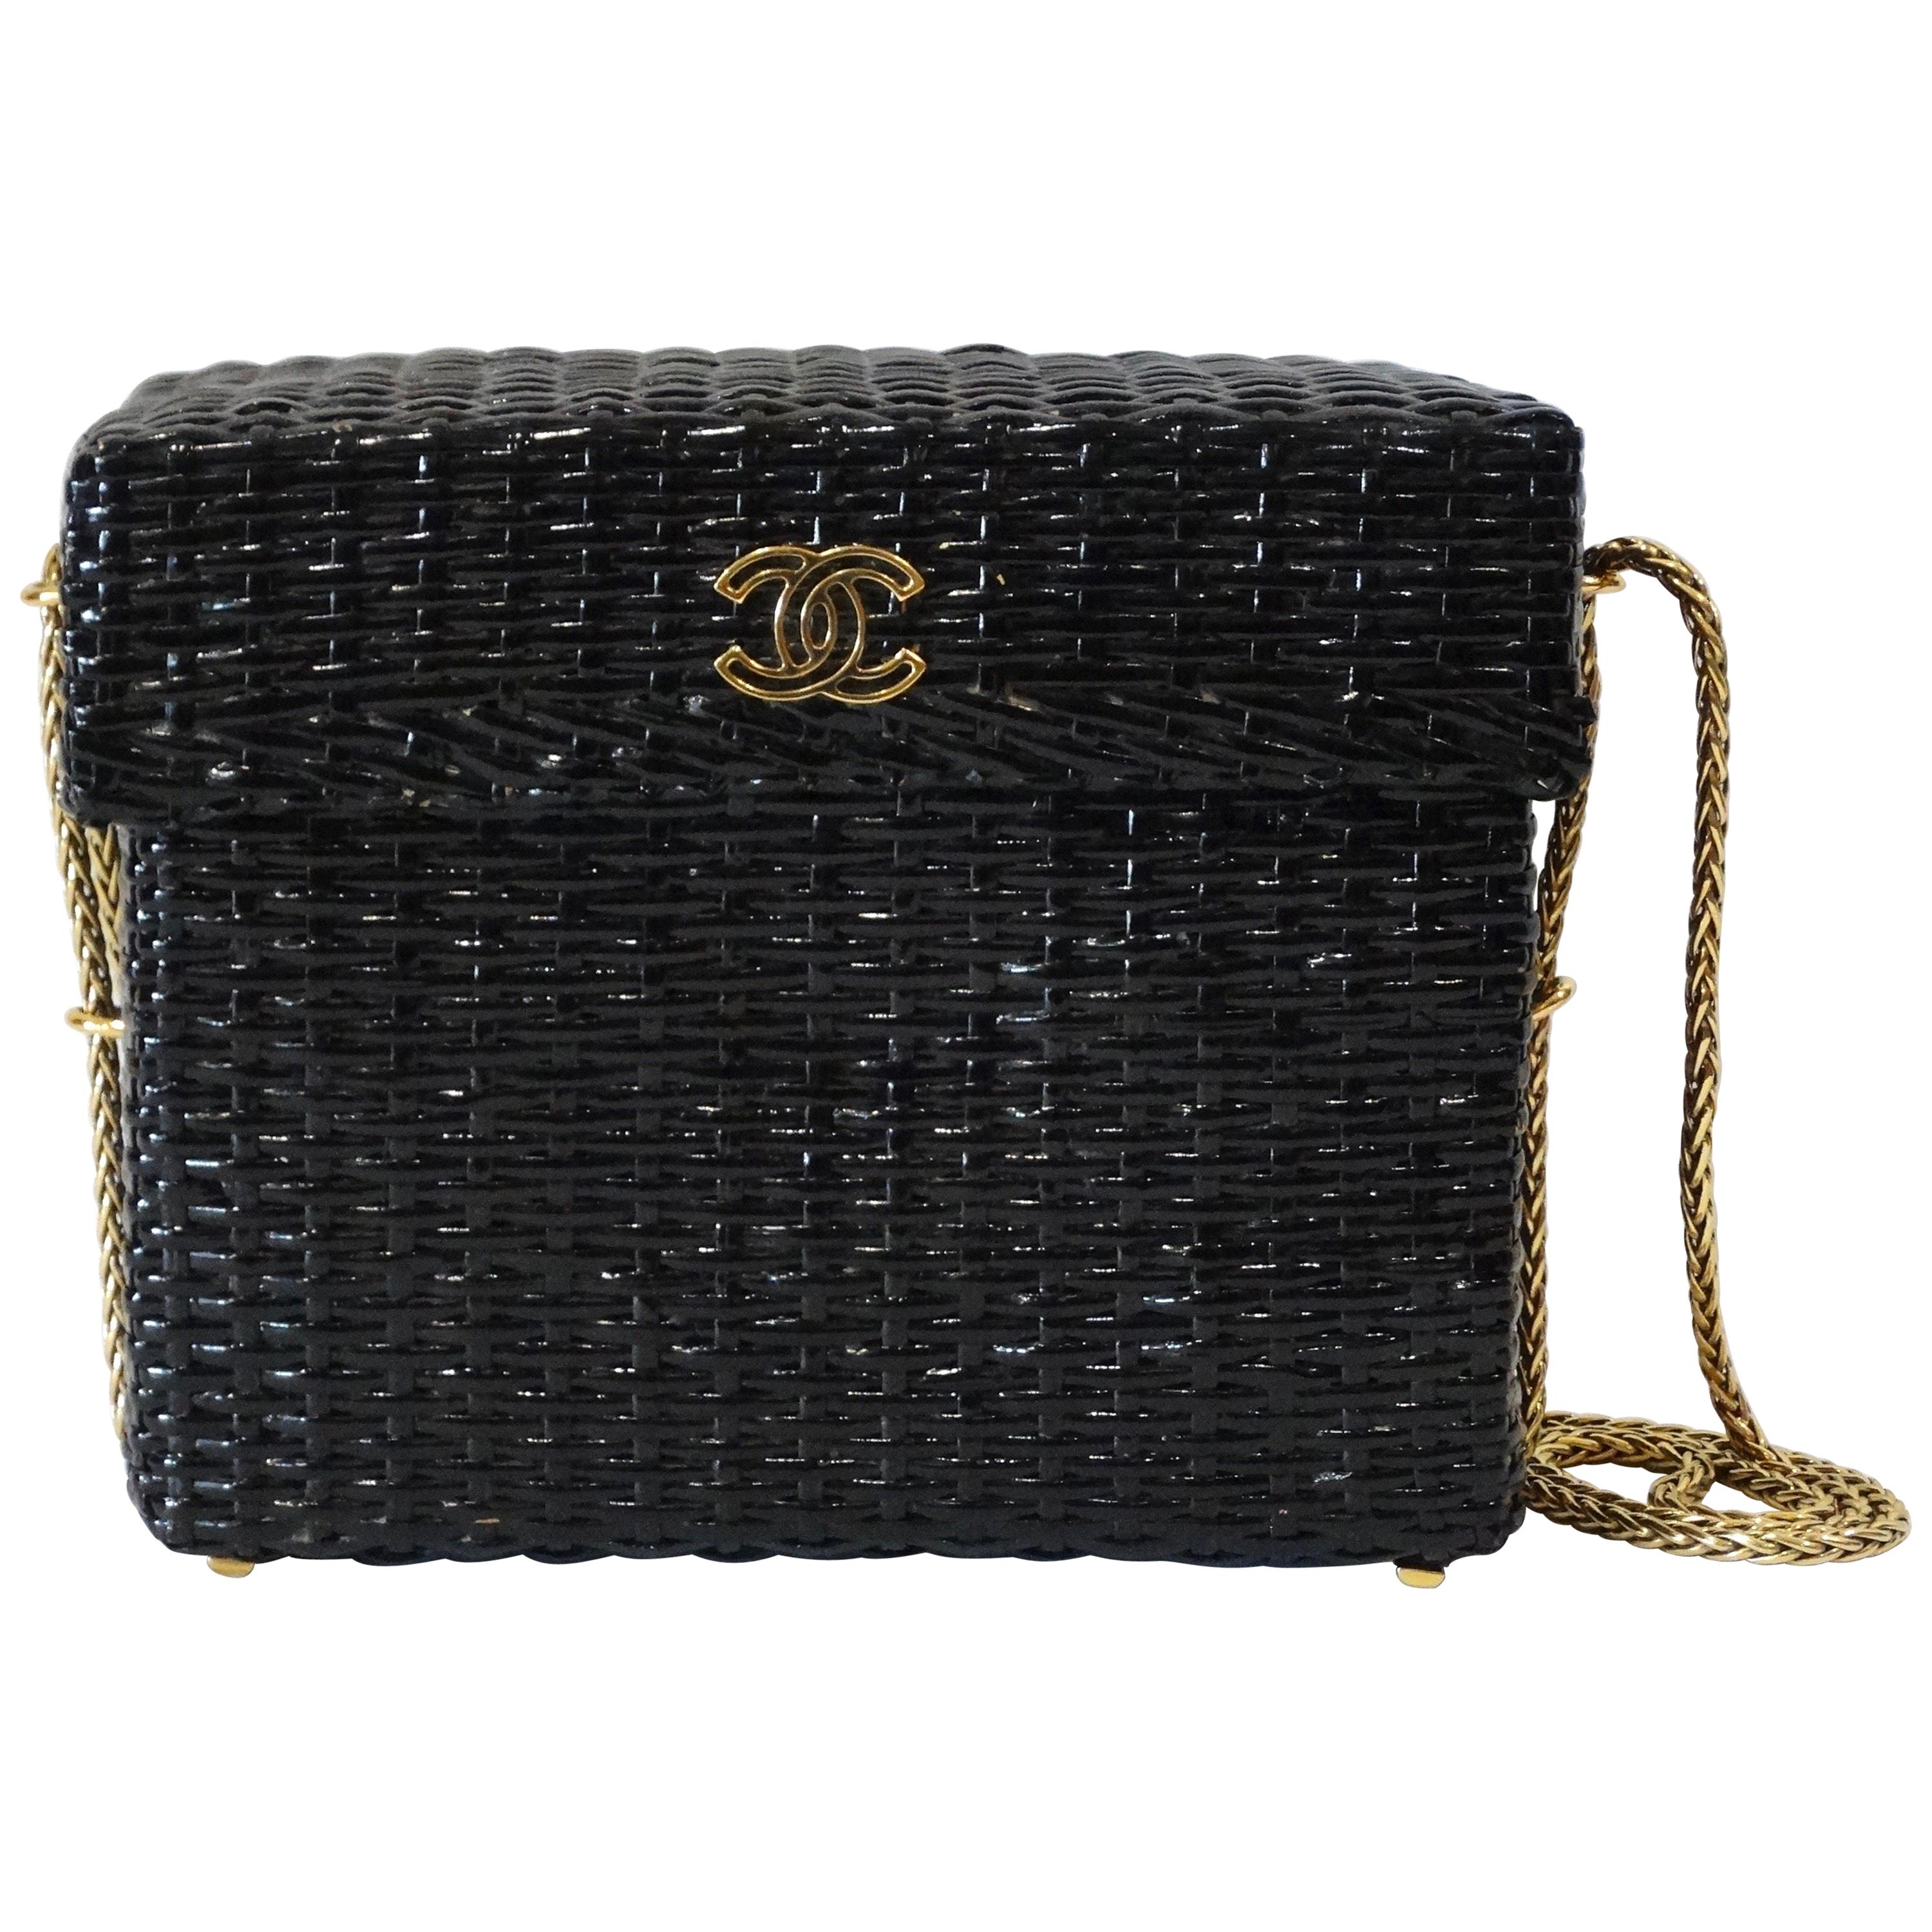 Rare 1990s Chanel Black Woven Rattan Basket Bag